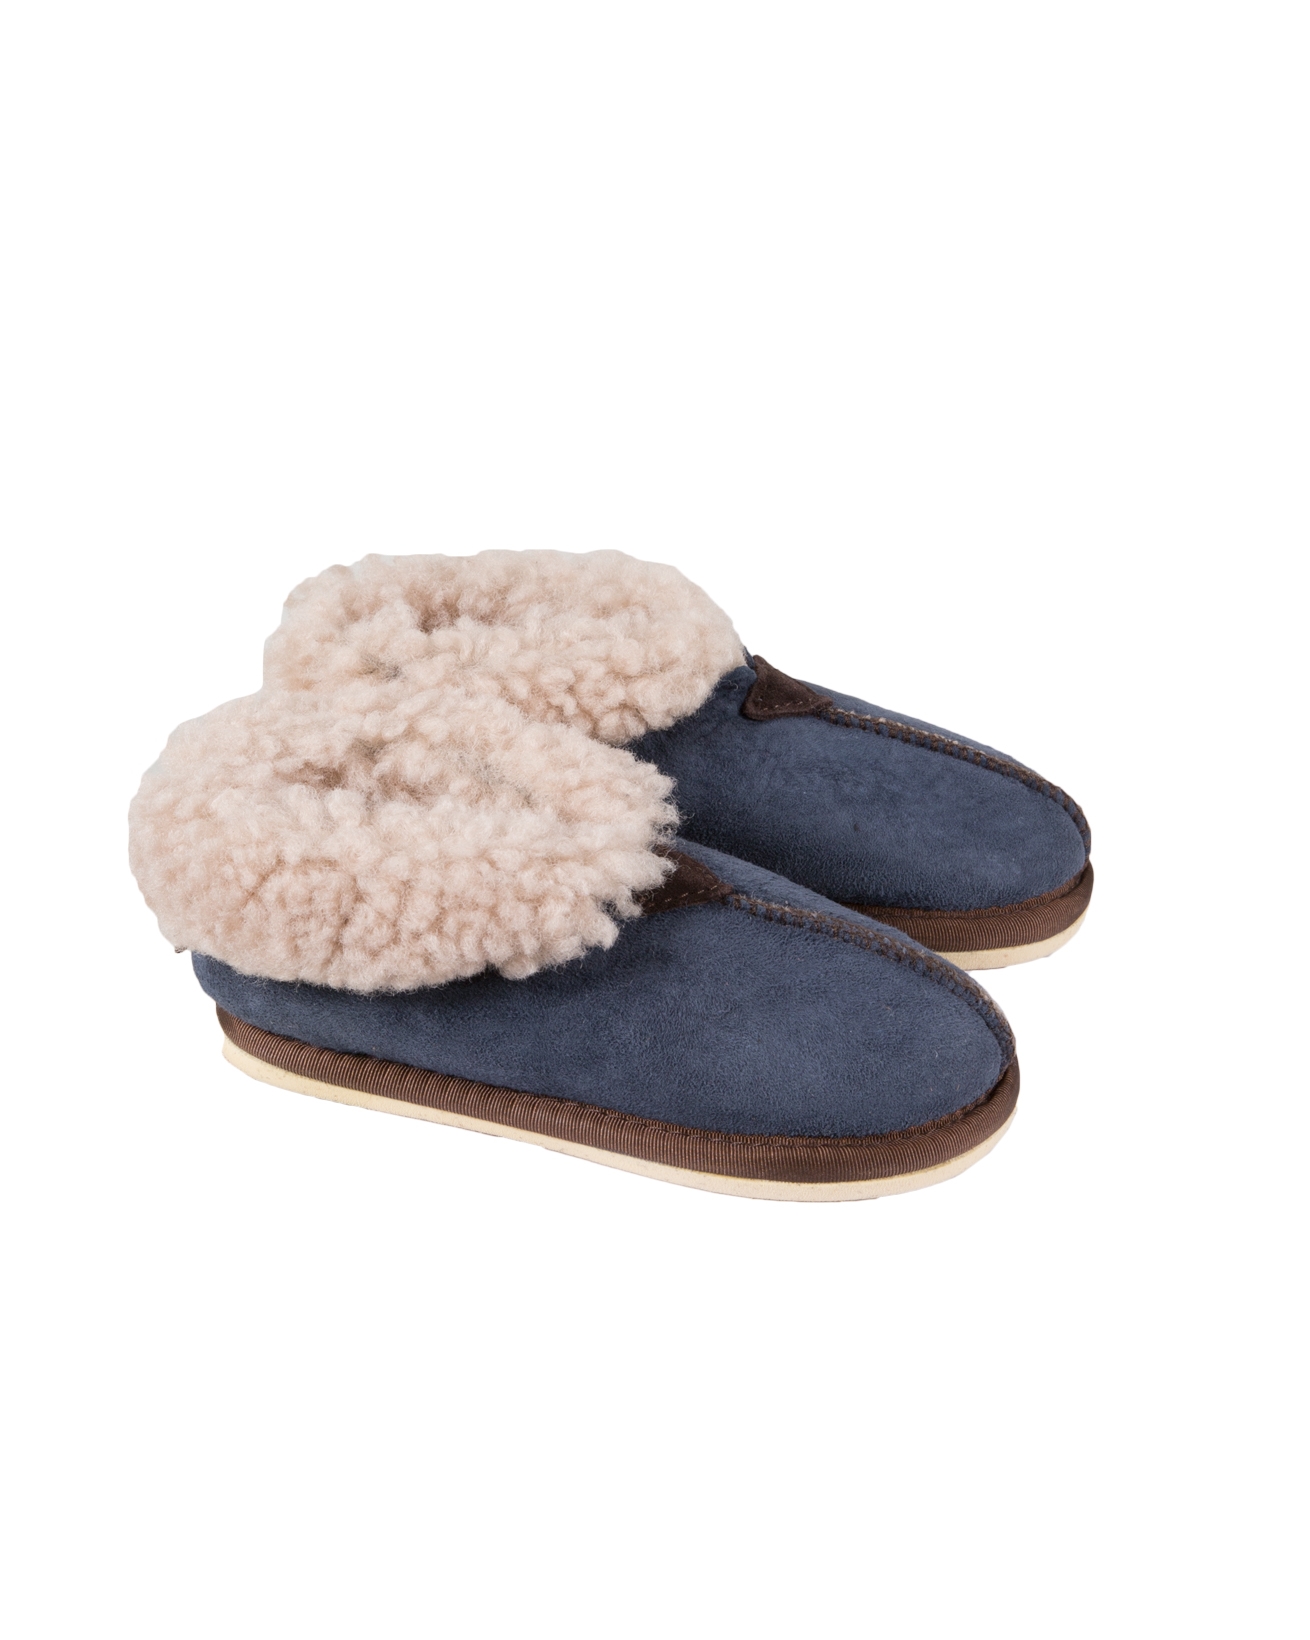 slipper size 9